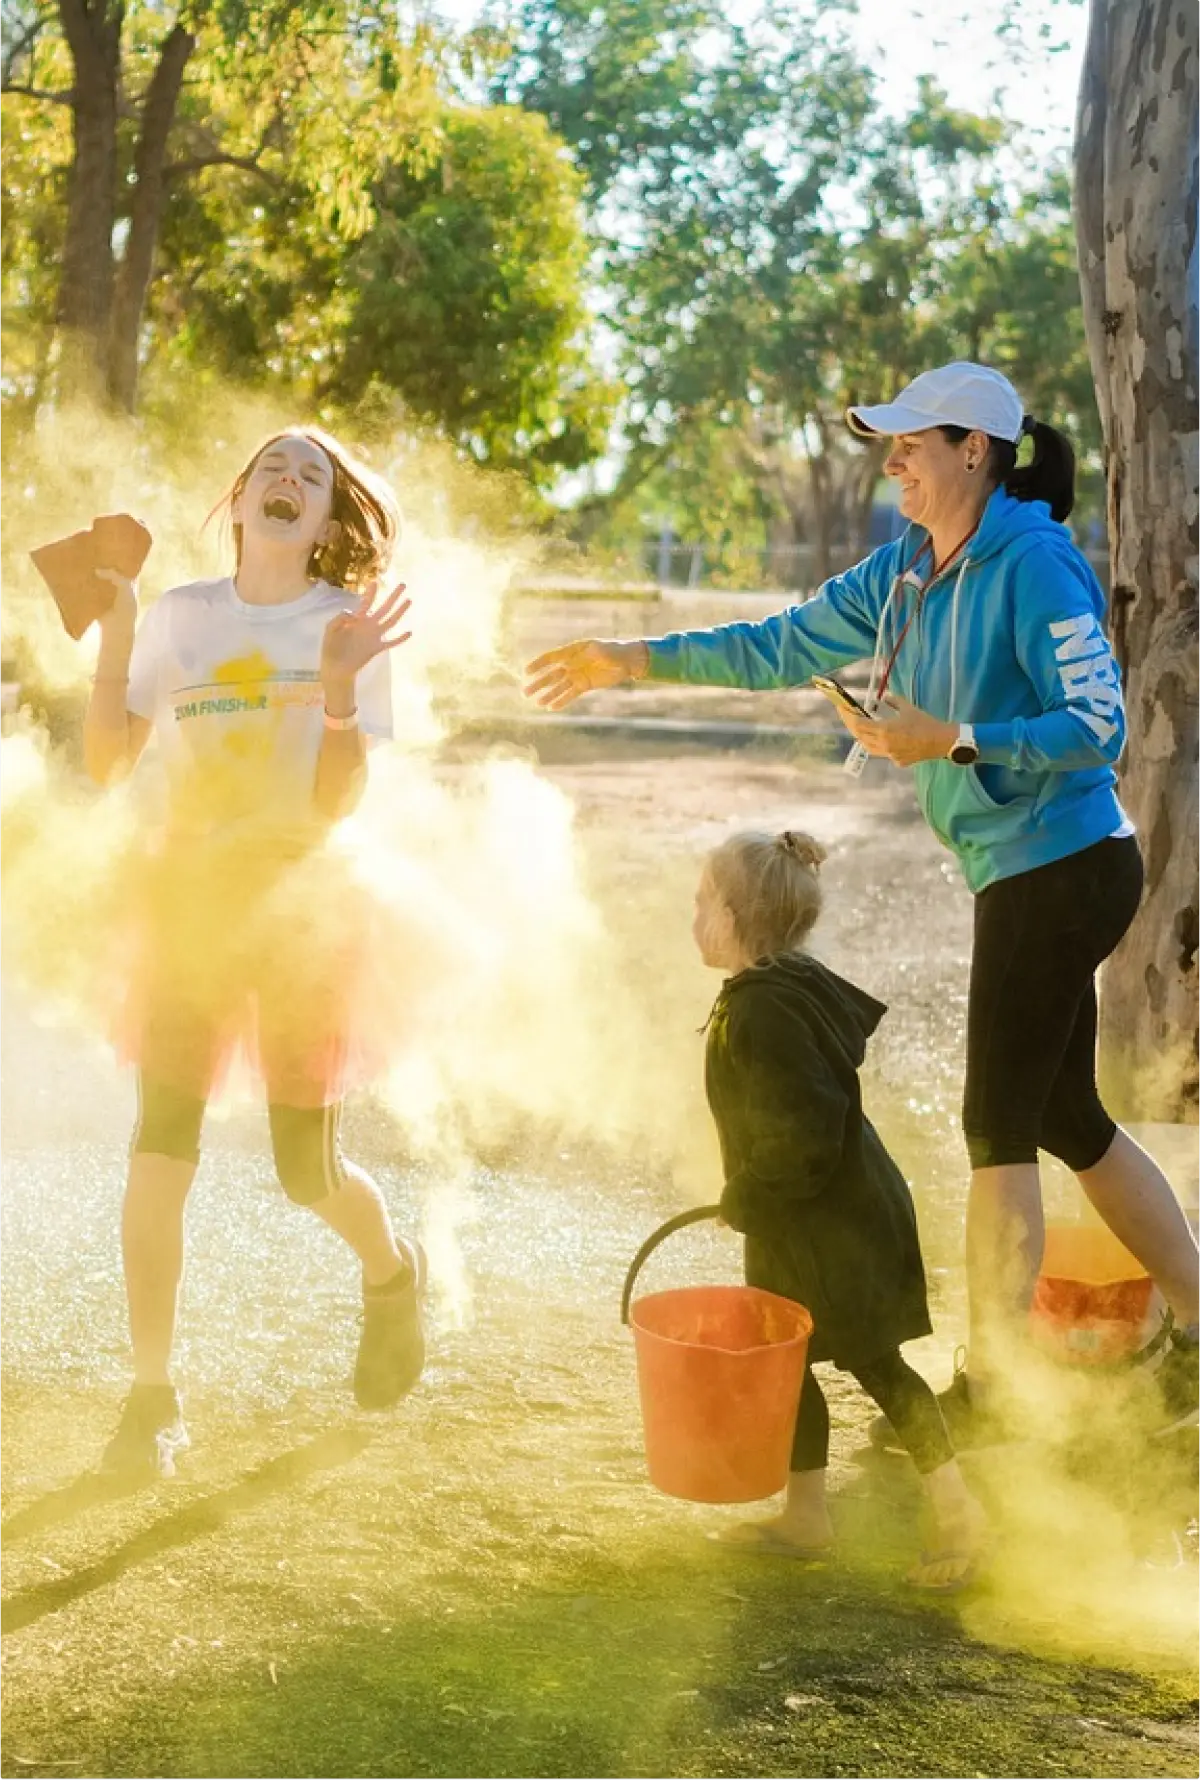 Djeca i odrasli zabavljaju se na color runu, žuti prah bačen je u zrak pa je nastao žarki oblak